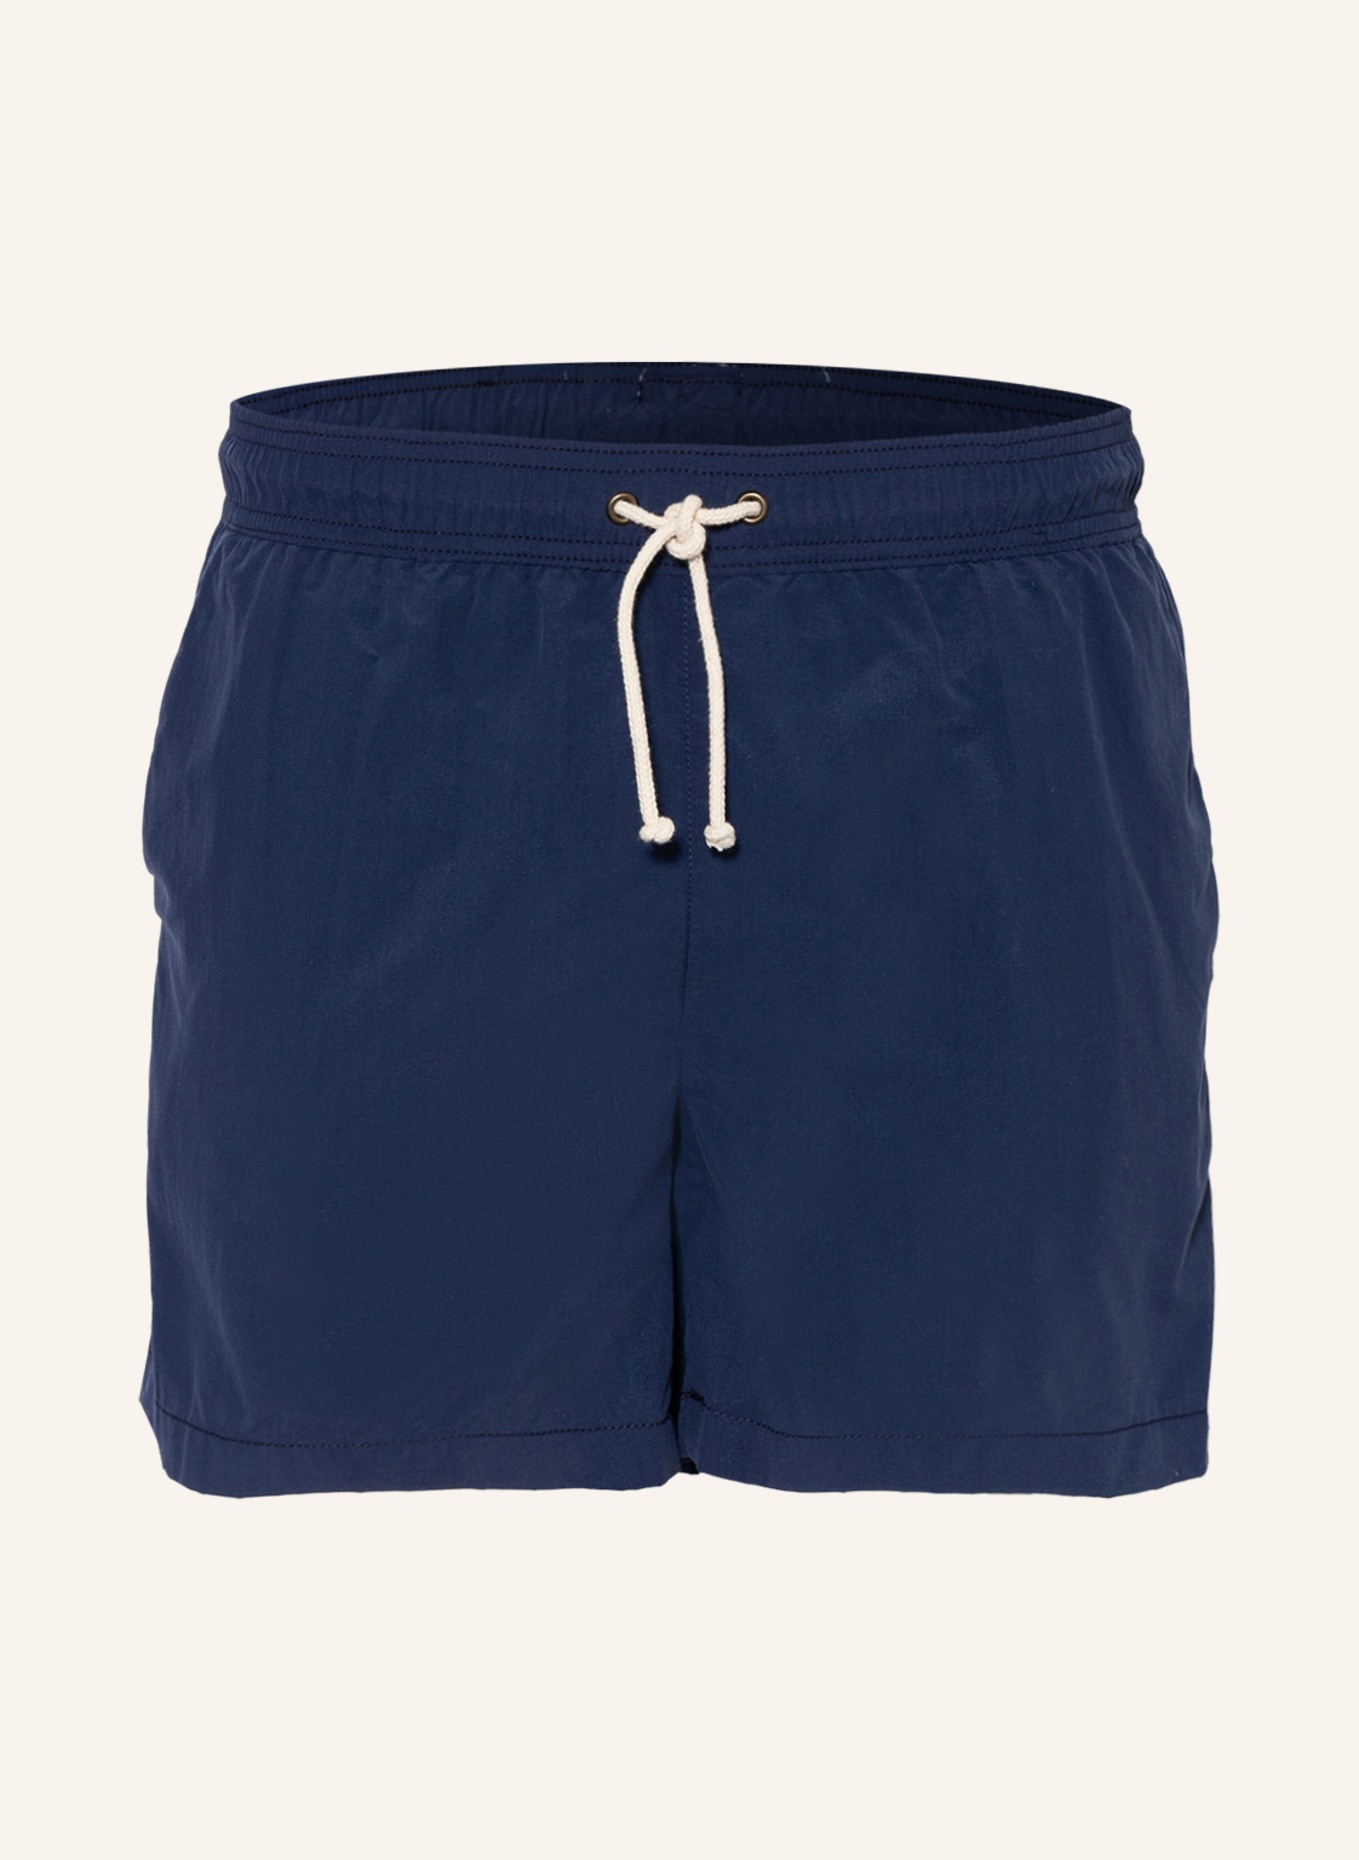 RIPA RIPA Swim shorts BLUE NOTTE , Color: DARK BLUE (Image 1)